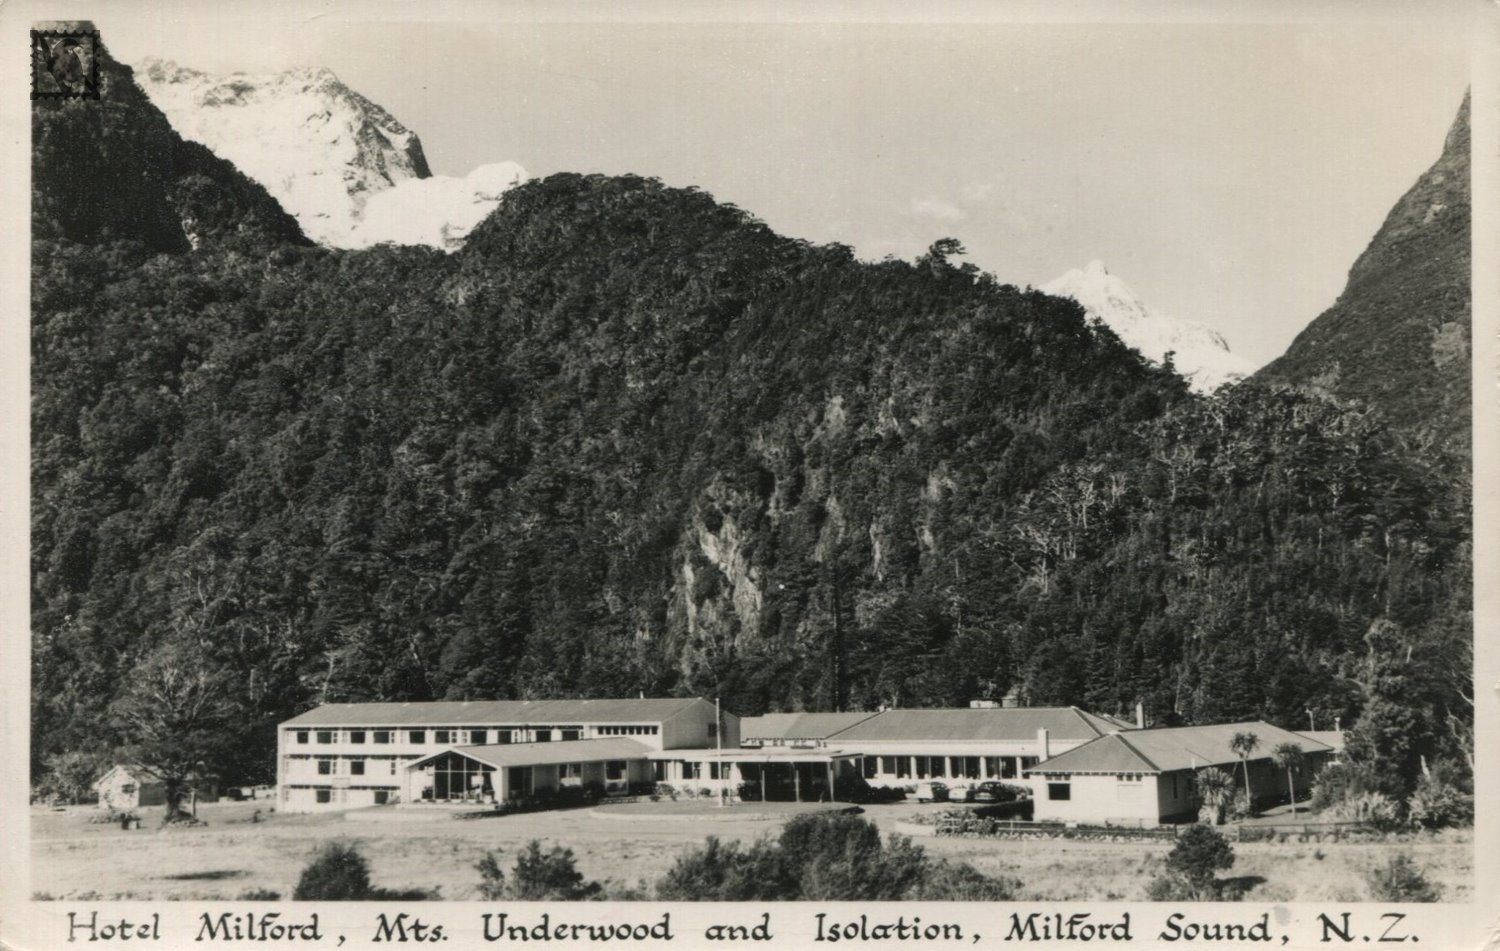 Fiordland - Hotel Milford Showing Mts. Underwood & Isolation